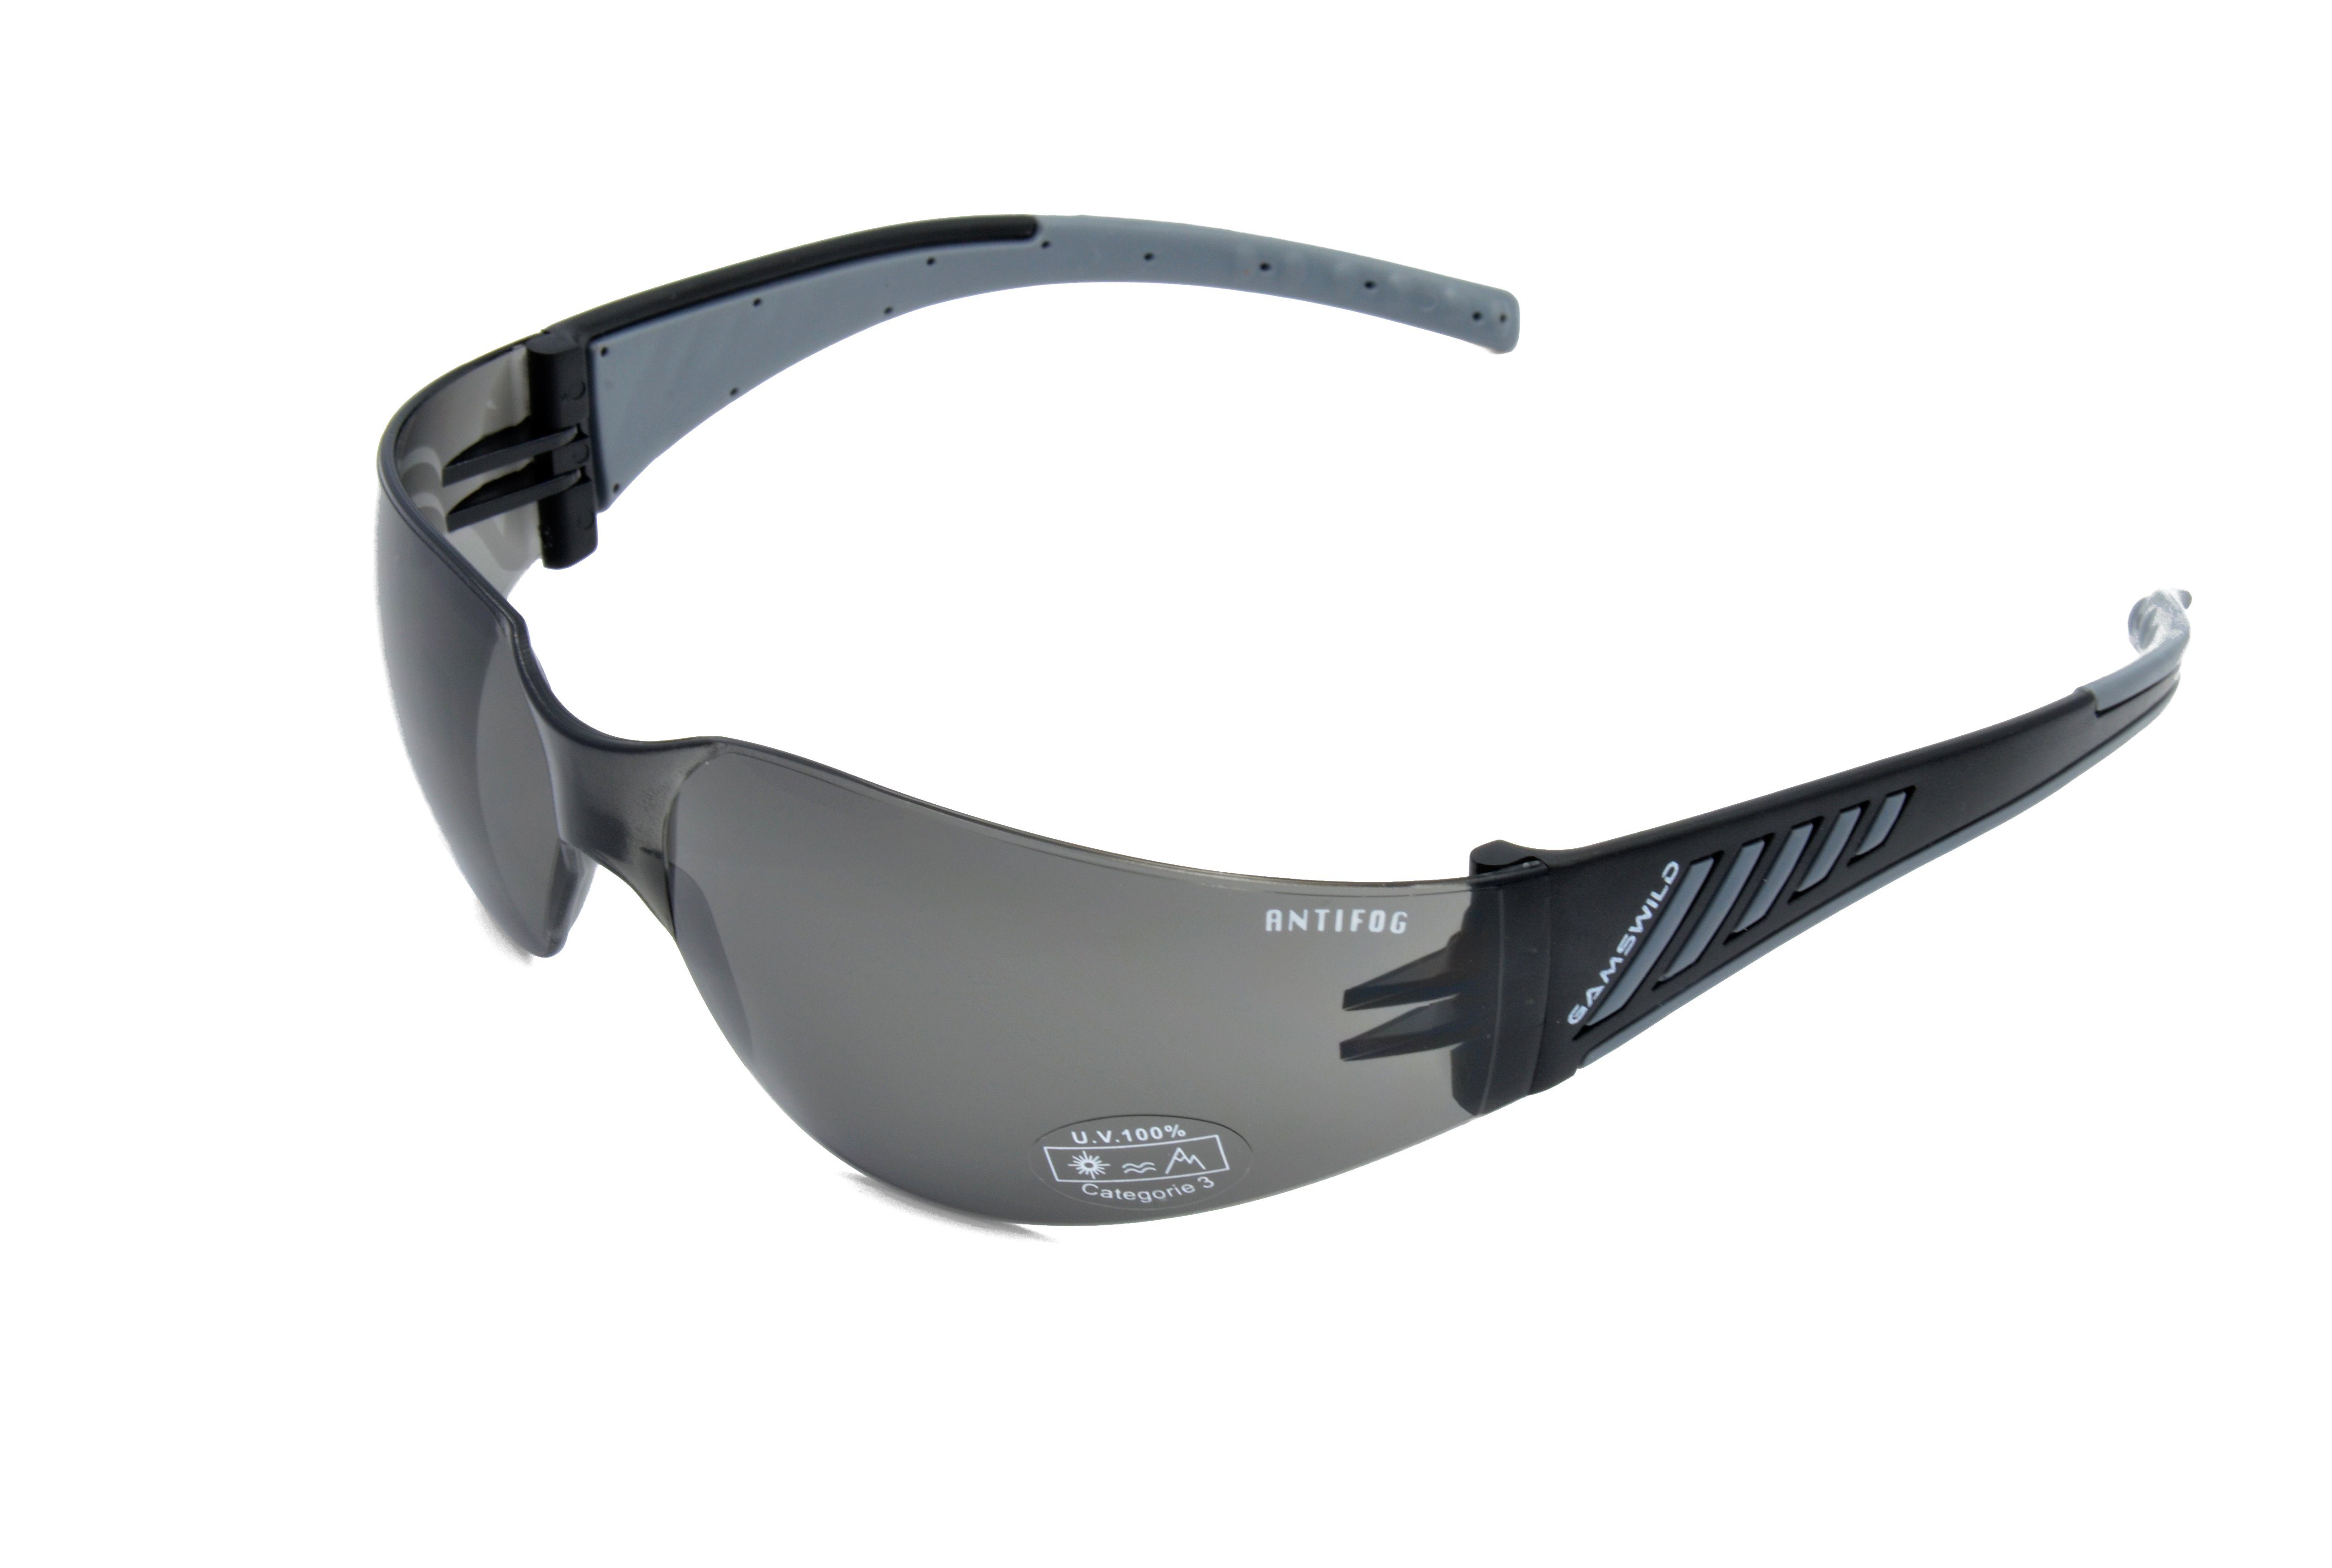 Gamswild Sportbrille WS7122 Sonnenbrille Damen Herren Fahrradbrille Skibrille Unisex, brau, grau, orange, ANTIFOG